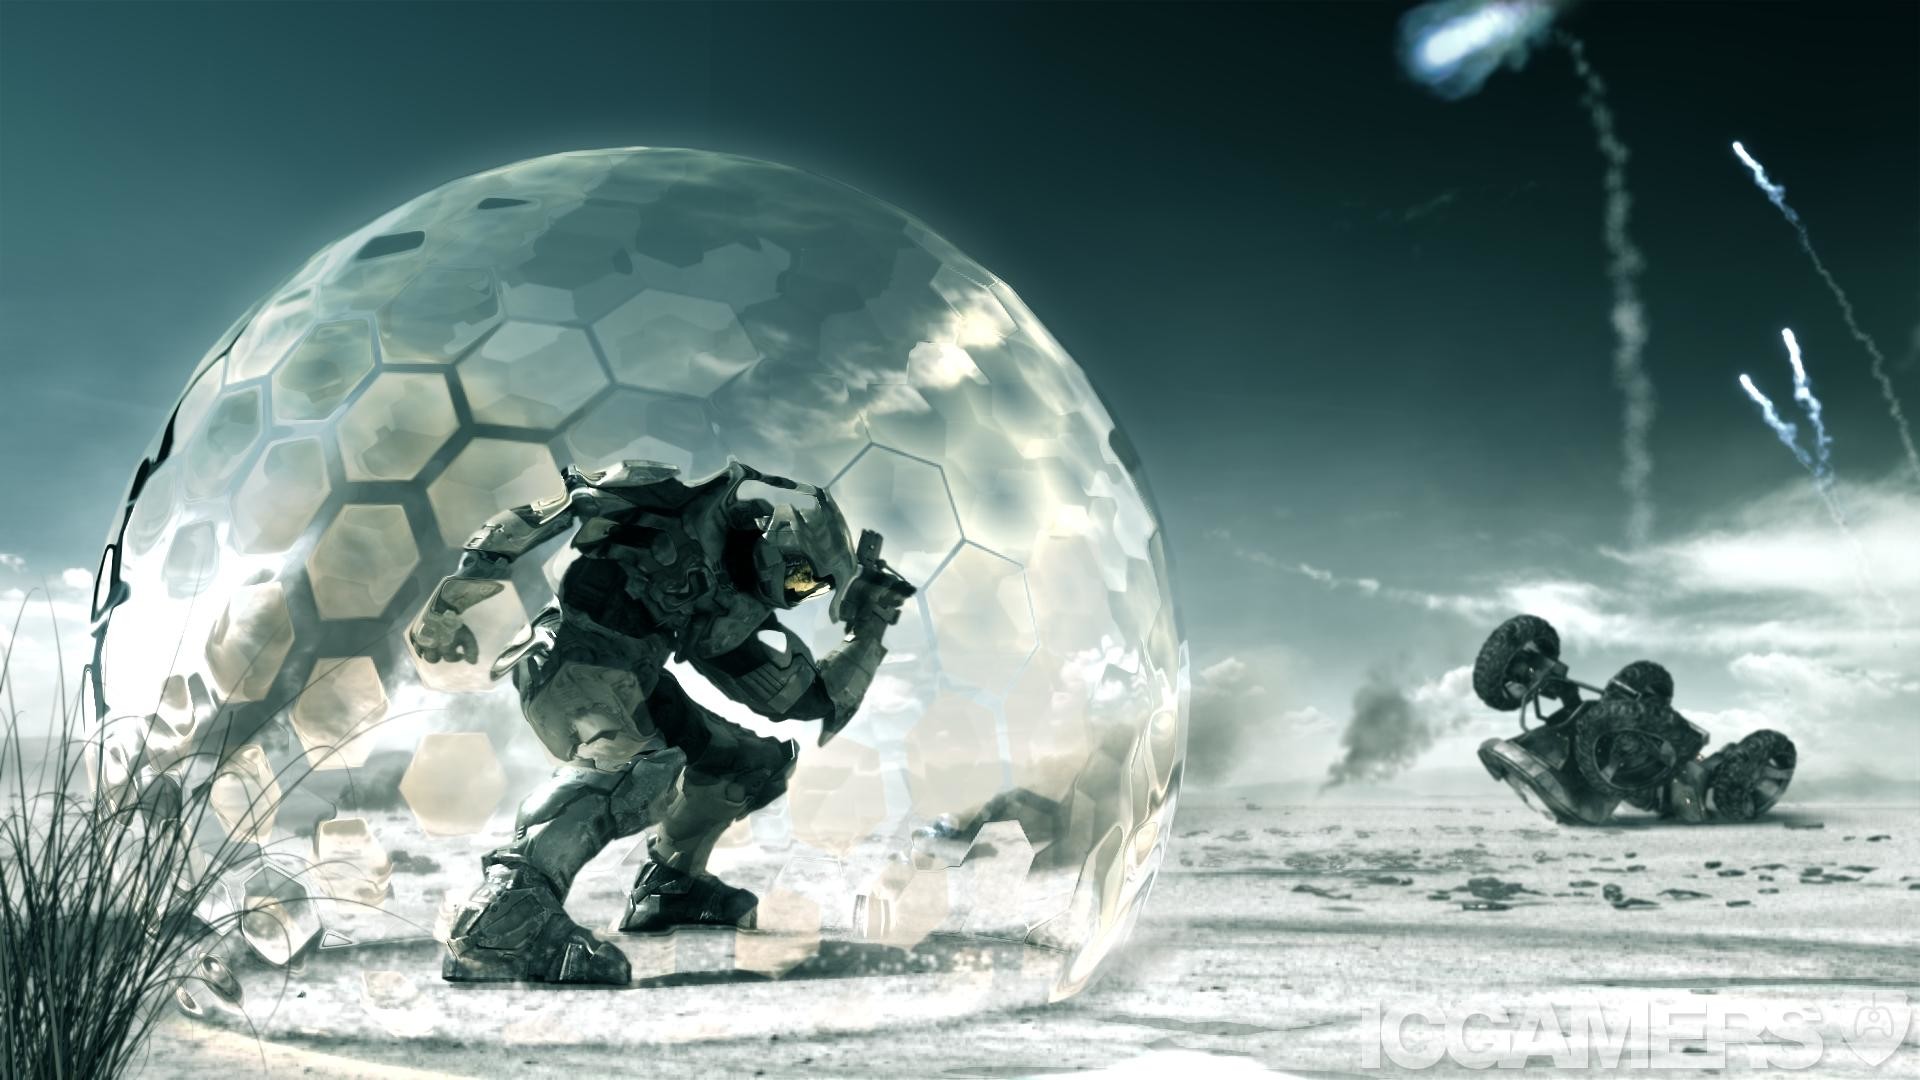 1920x1080 Master Chief in a bubble shield - Halo 3 Tv spot